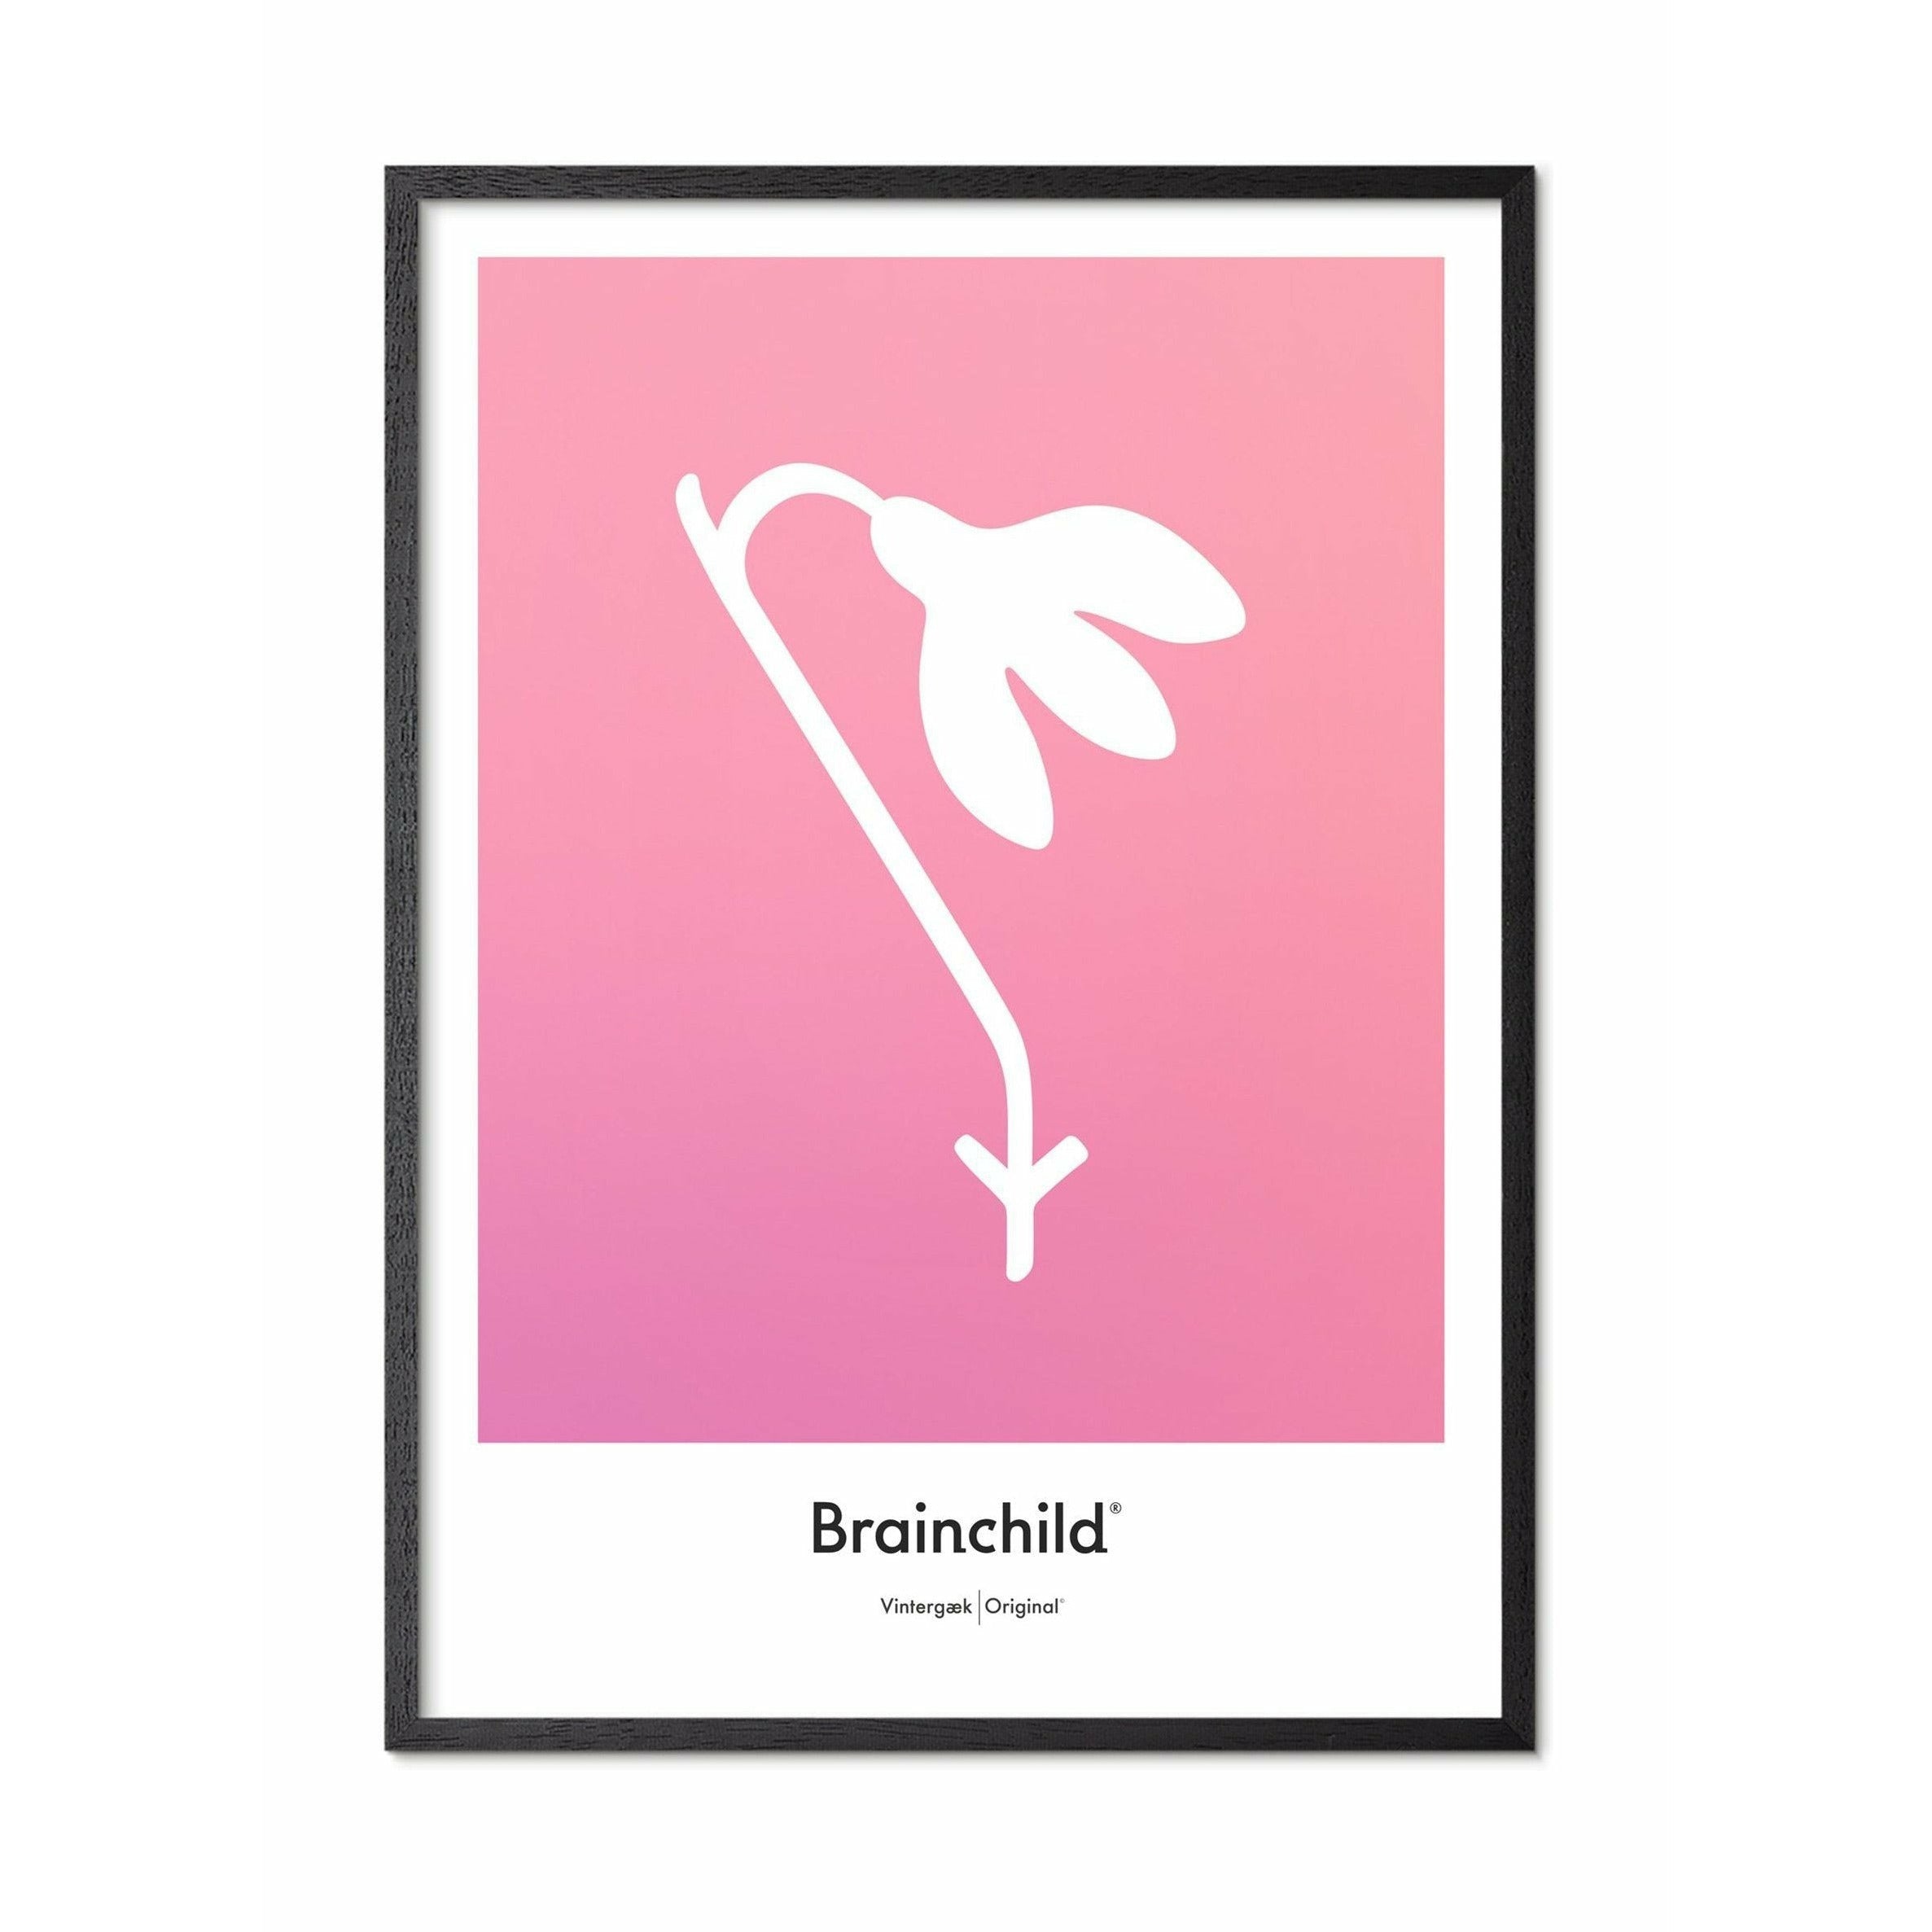 Brainchild Schneeglöckchen Design Icon Poster, Rahmen In Schwarz Lackiert Holz 30x40 Cm, Rosa